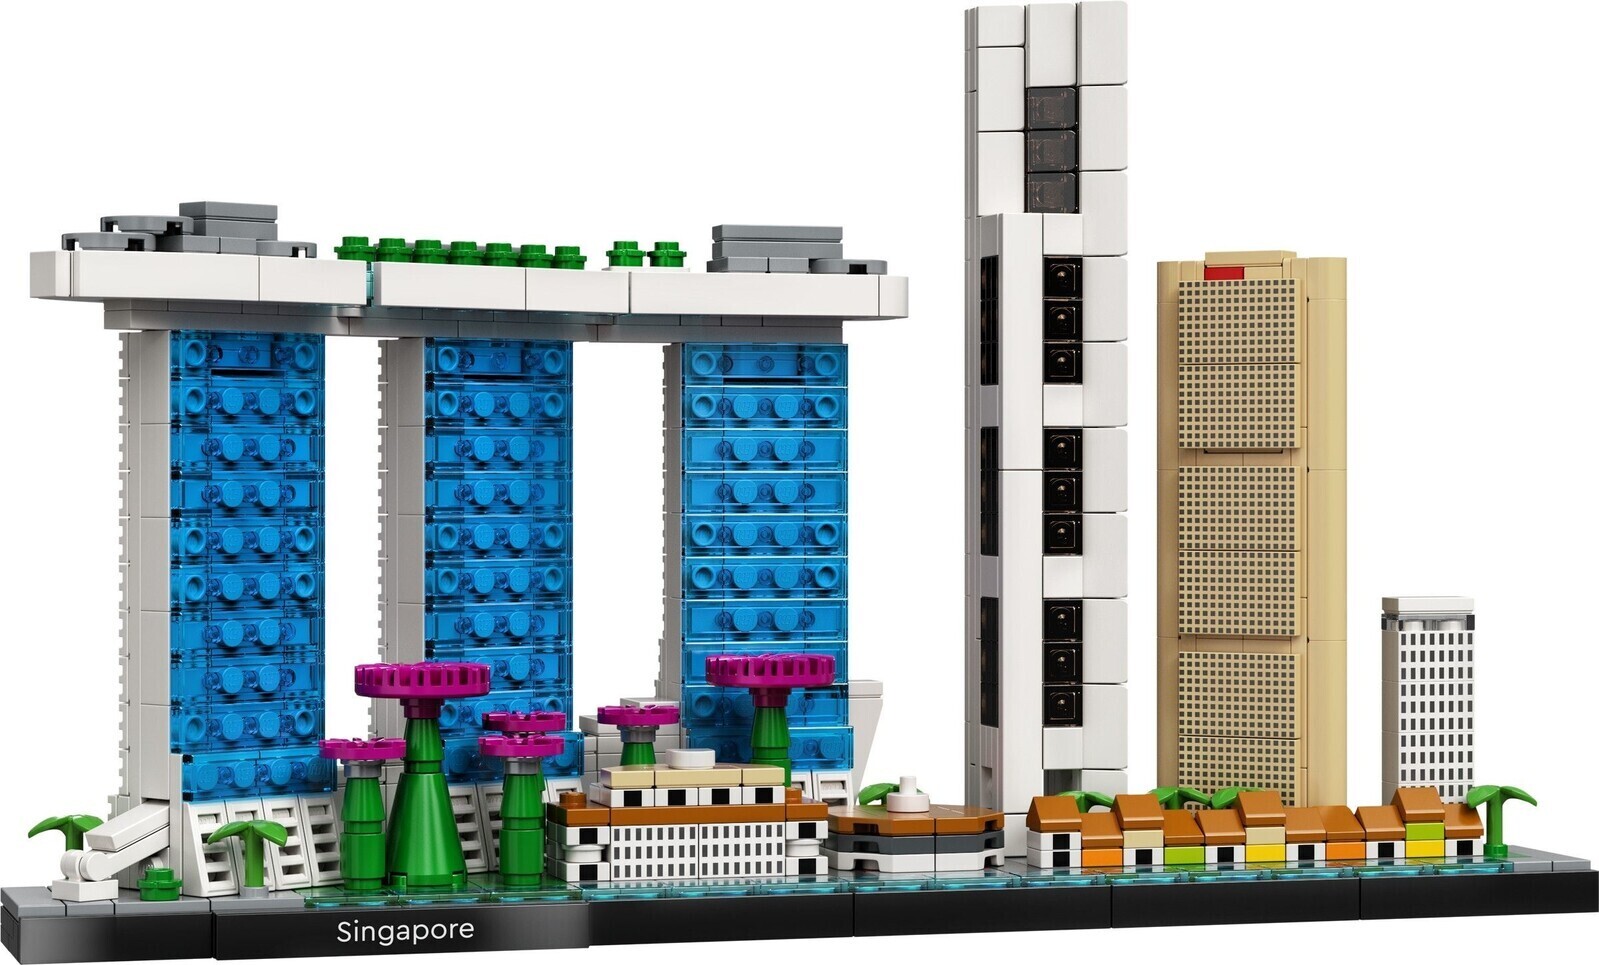 LEGO 21044 Architecture Paris - Ensemble de Construction Skyline